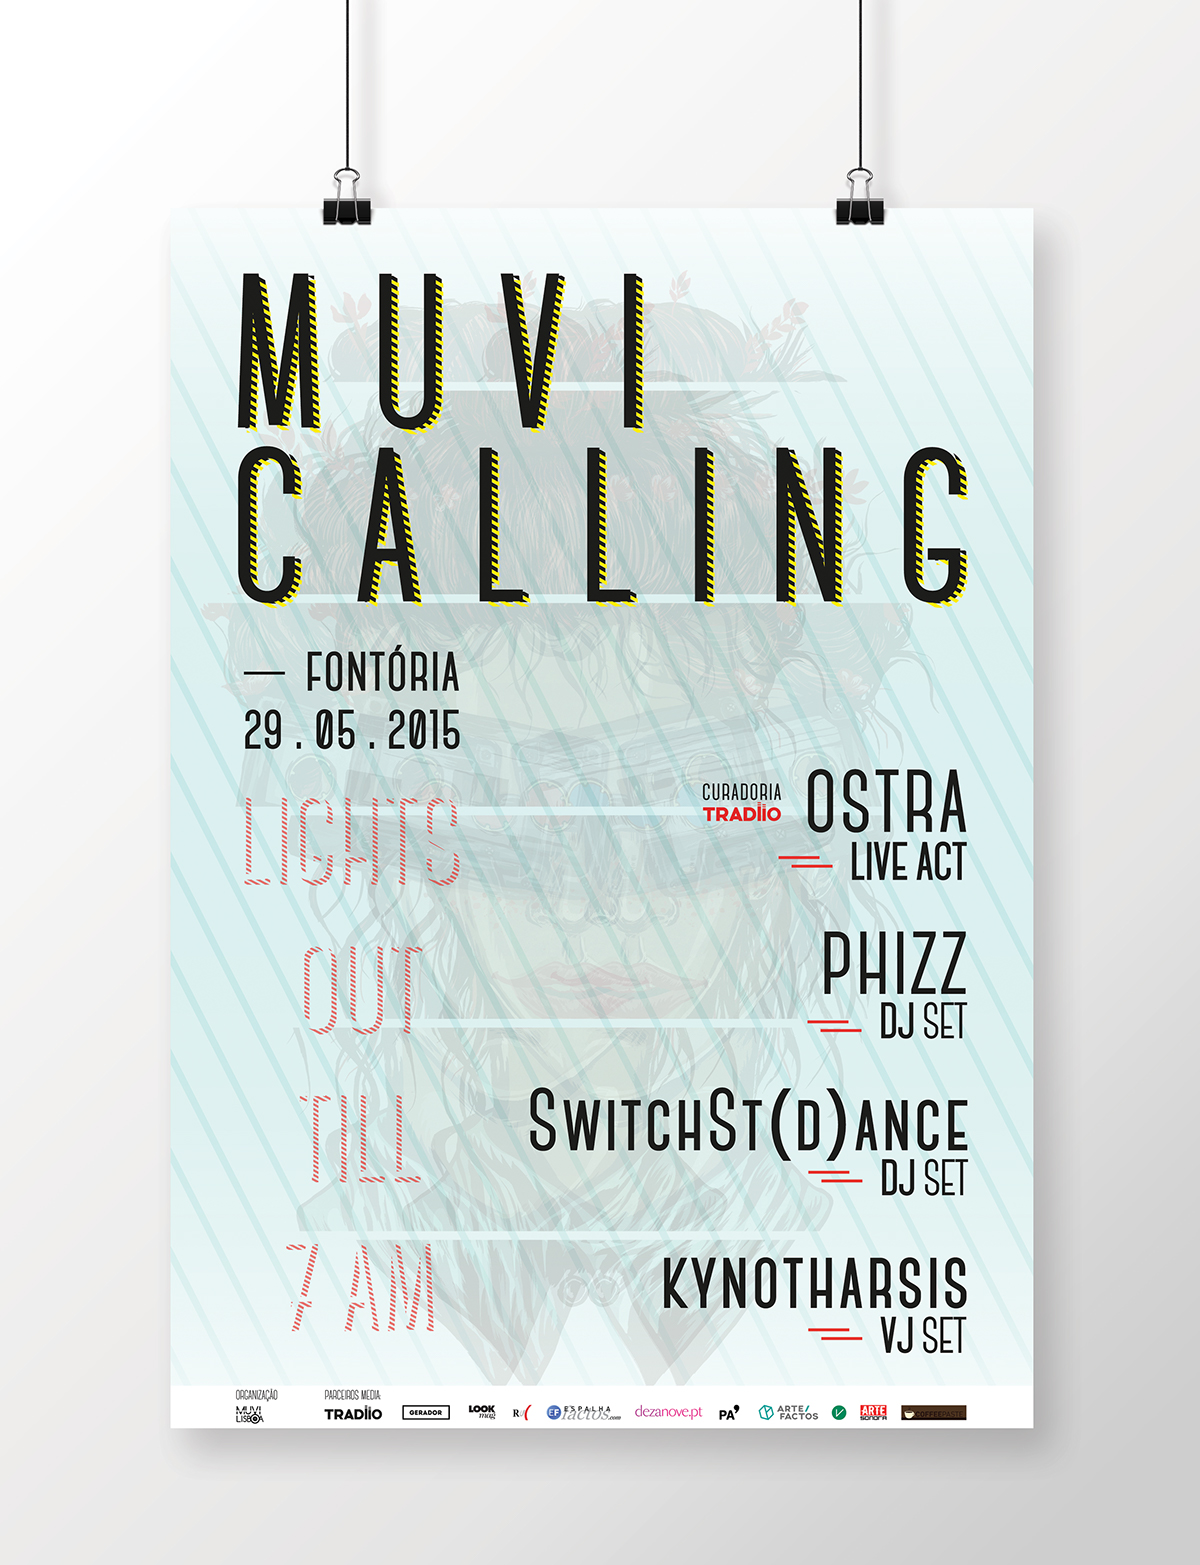 MUVI Lisboa Muvi Calling phizz Phizz dj phizzdjset ostra switchstdance kynotharsis